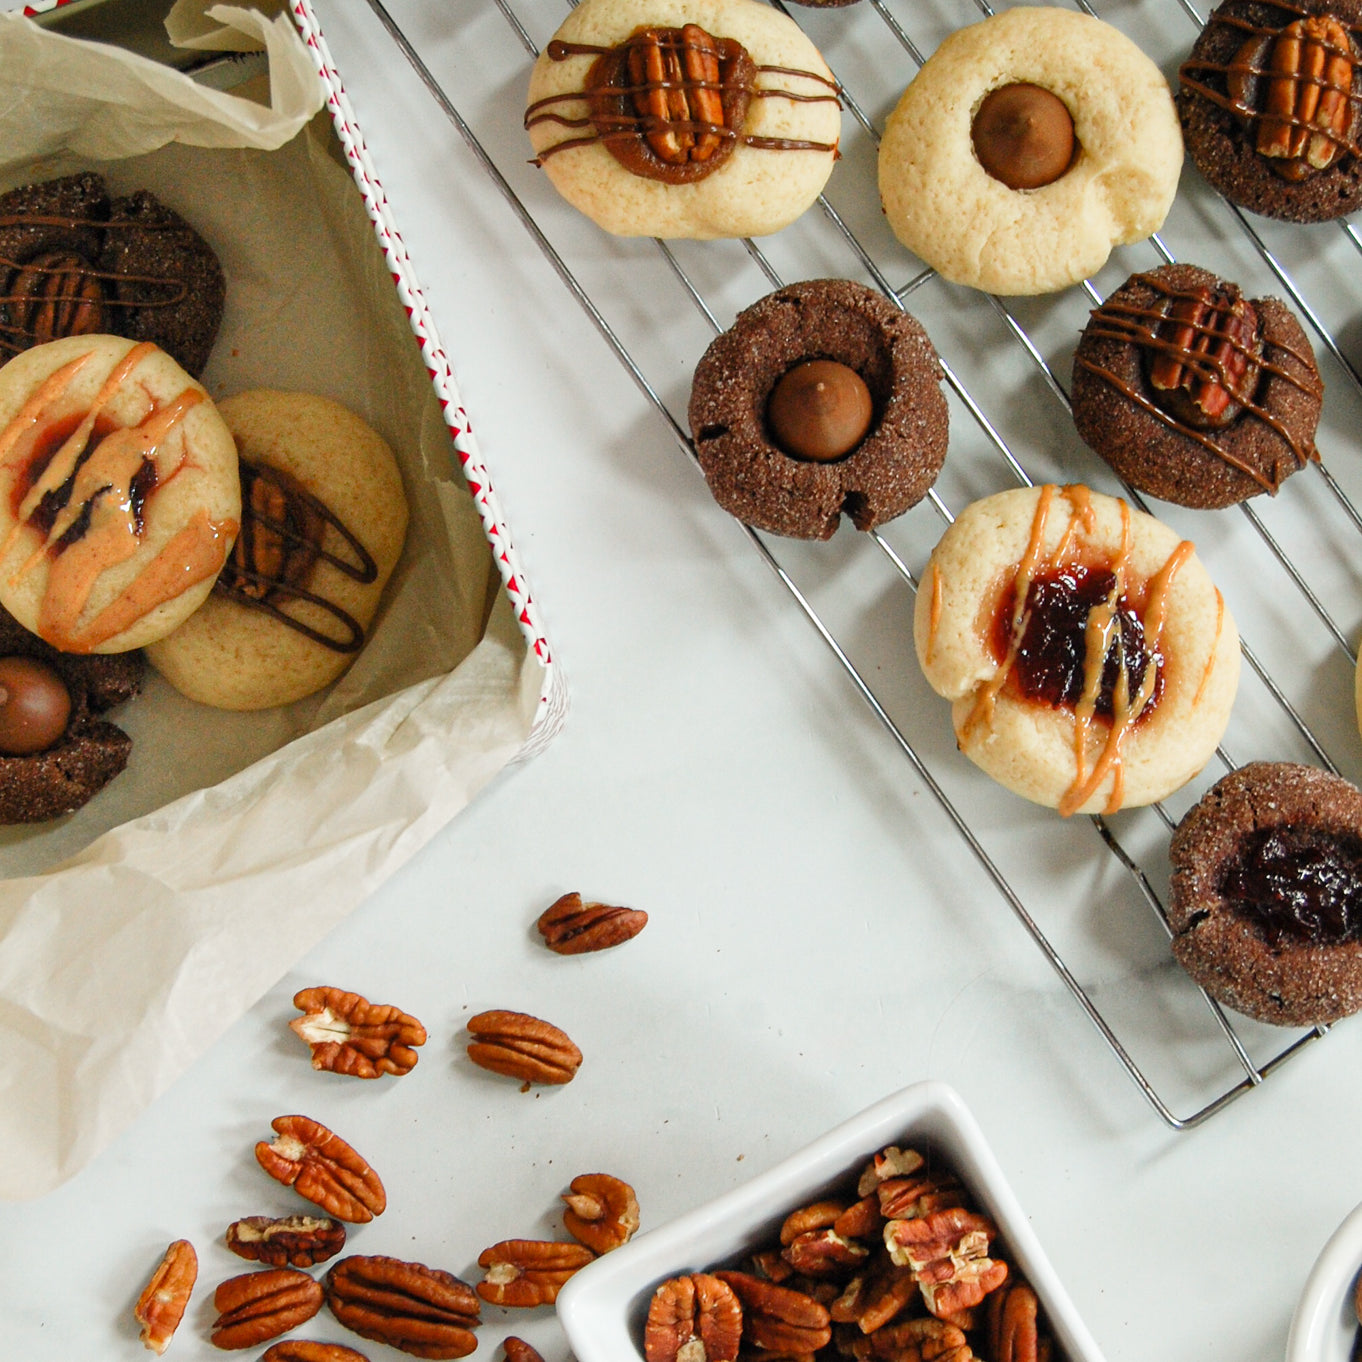 Deux simples recettes de biscuits à faire en famille durant le temps des fêtes. Utilisez votre imagination pour adapter les garnitures